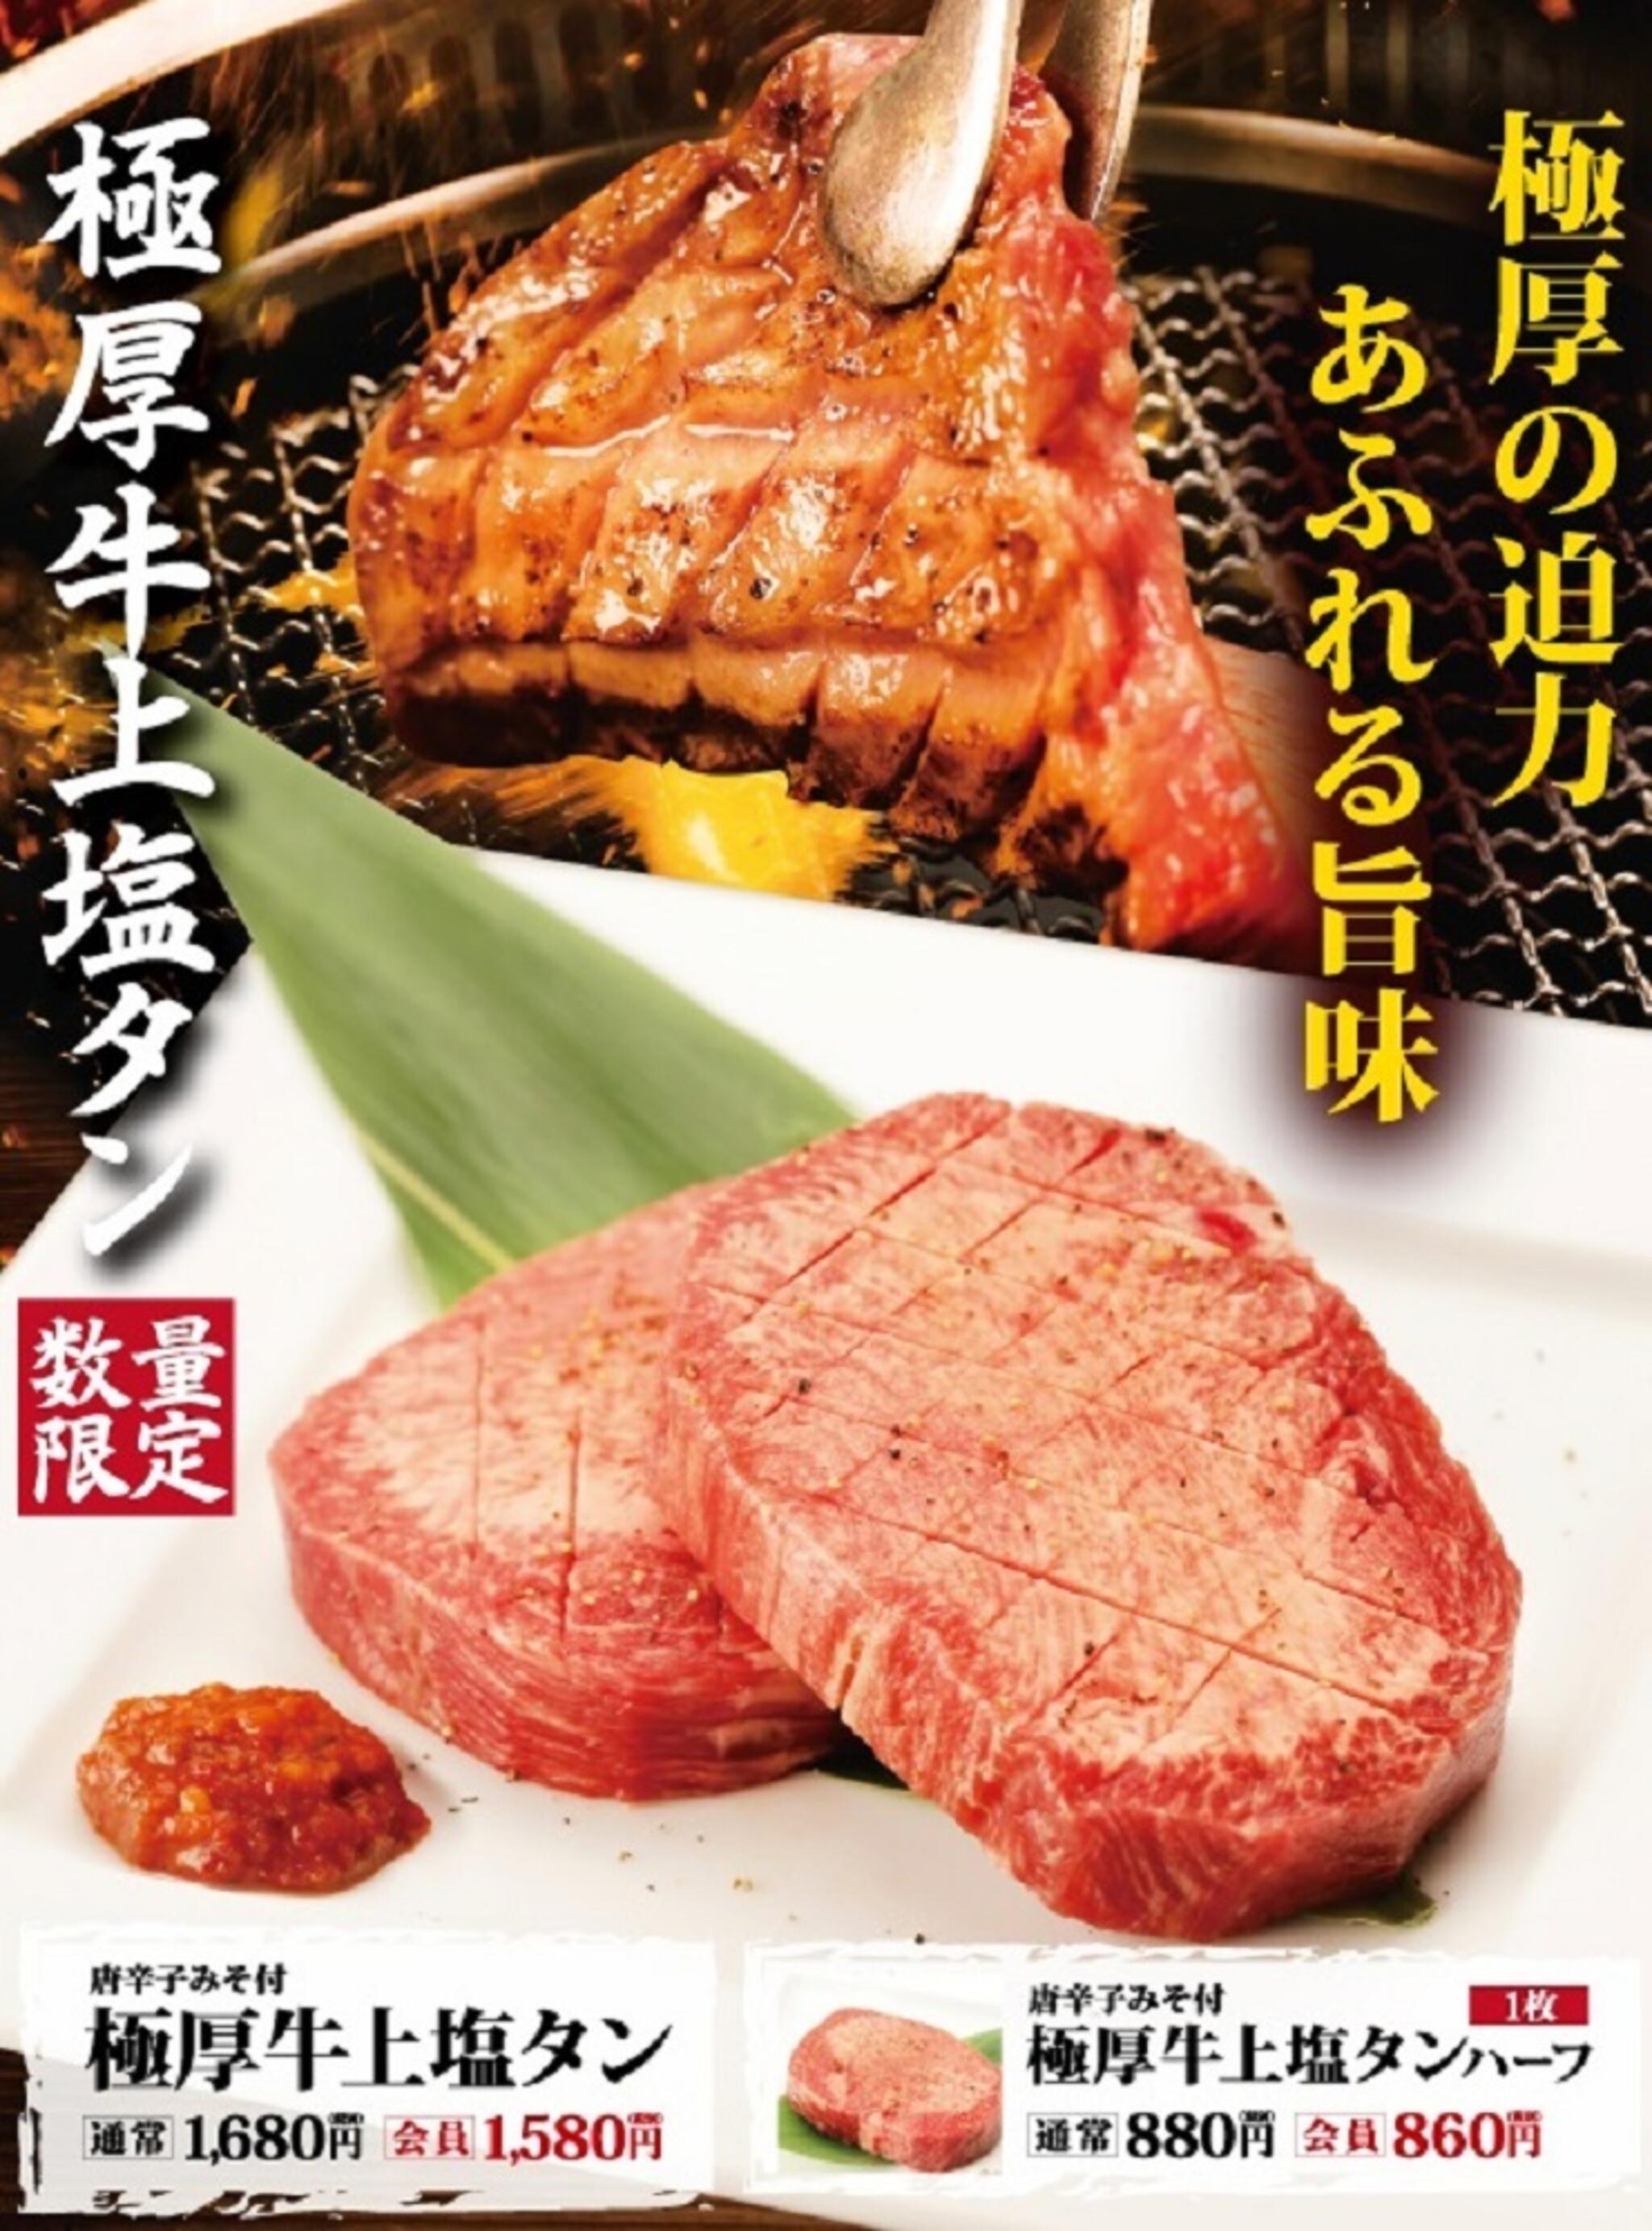 焼肉冷麺やまなか家 上田バイパス店からのお知らせ(極厚牛上塩タン【期間限定】)に関する写真